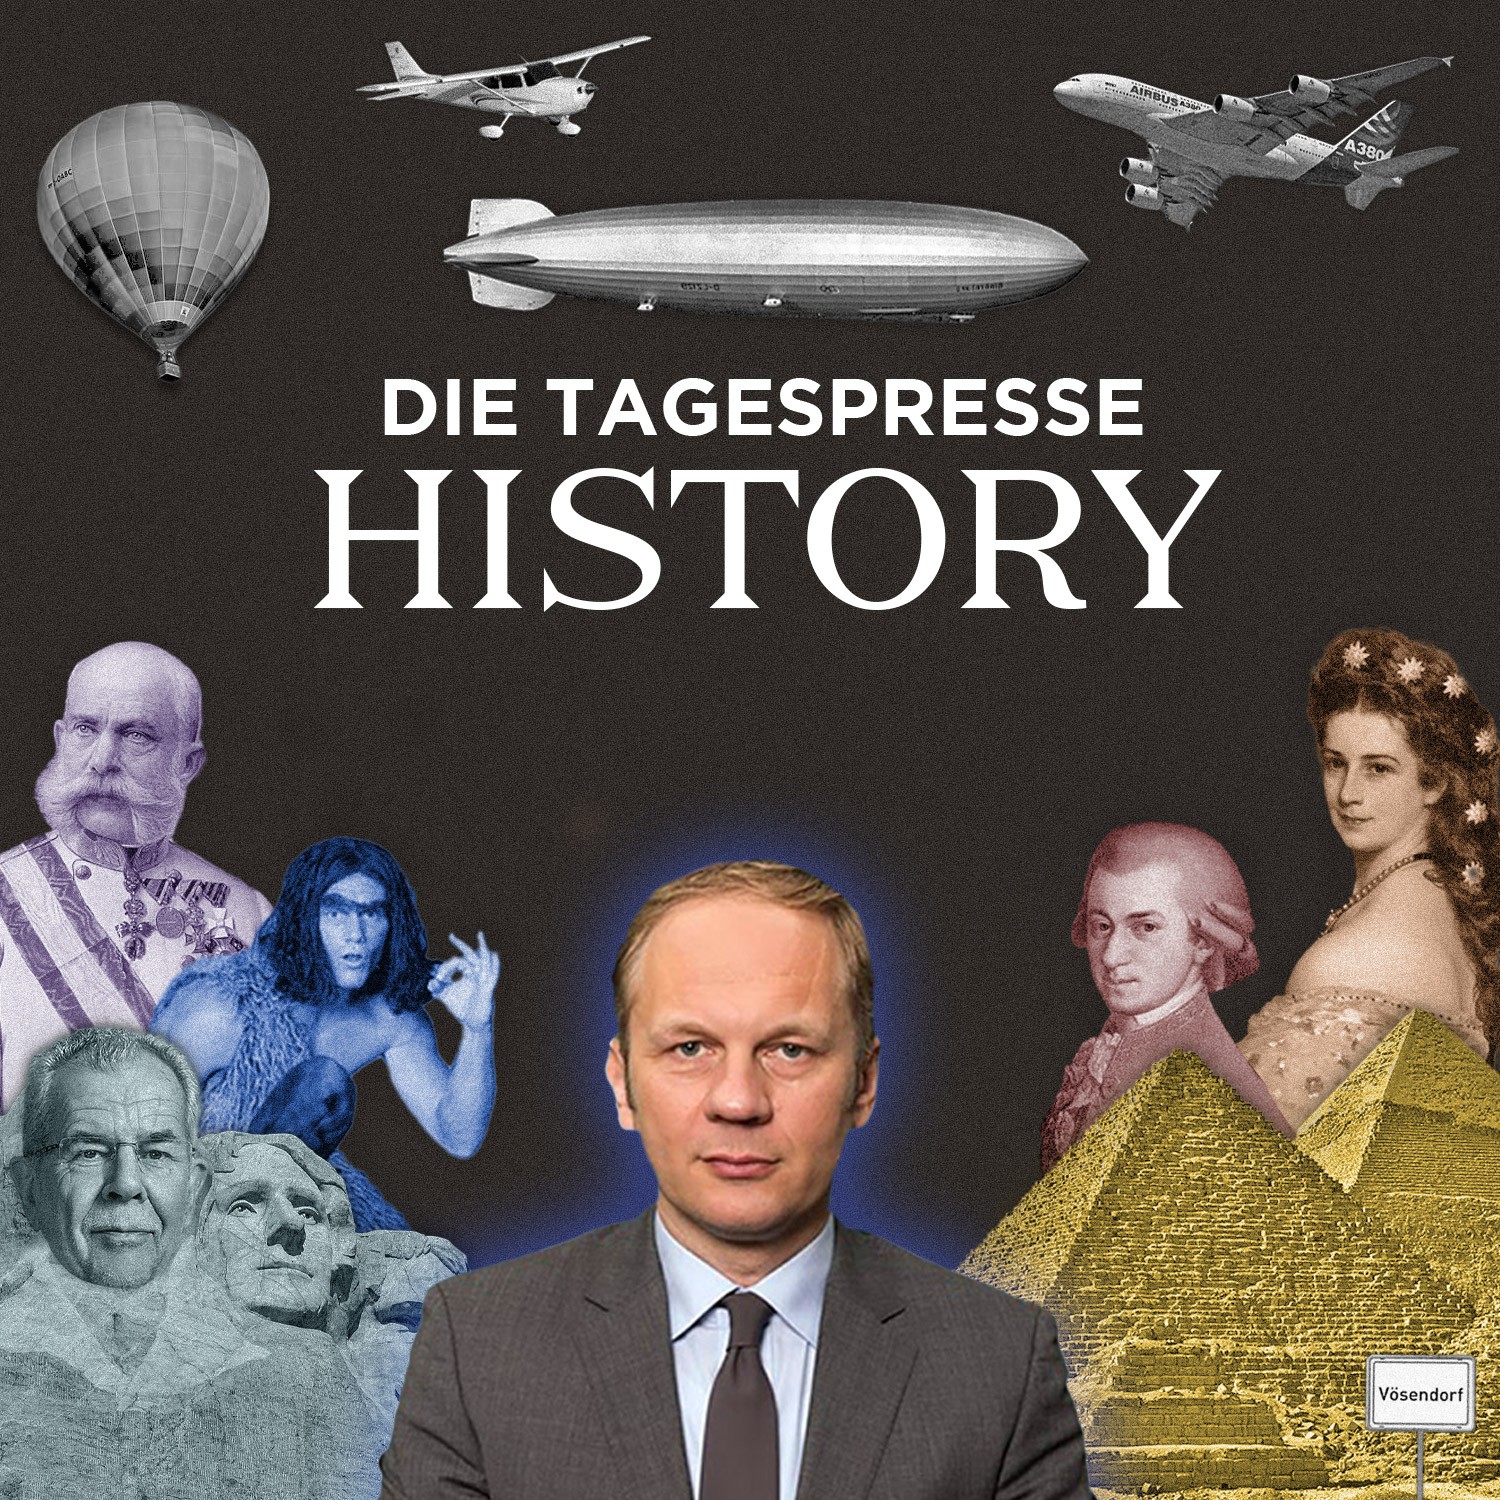 Tagespresse History (c) Fritz Jergitsch